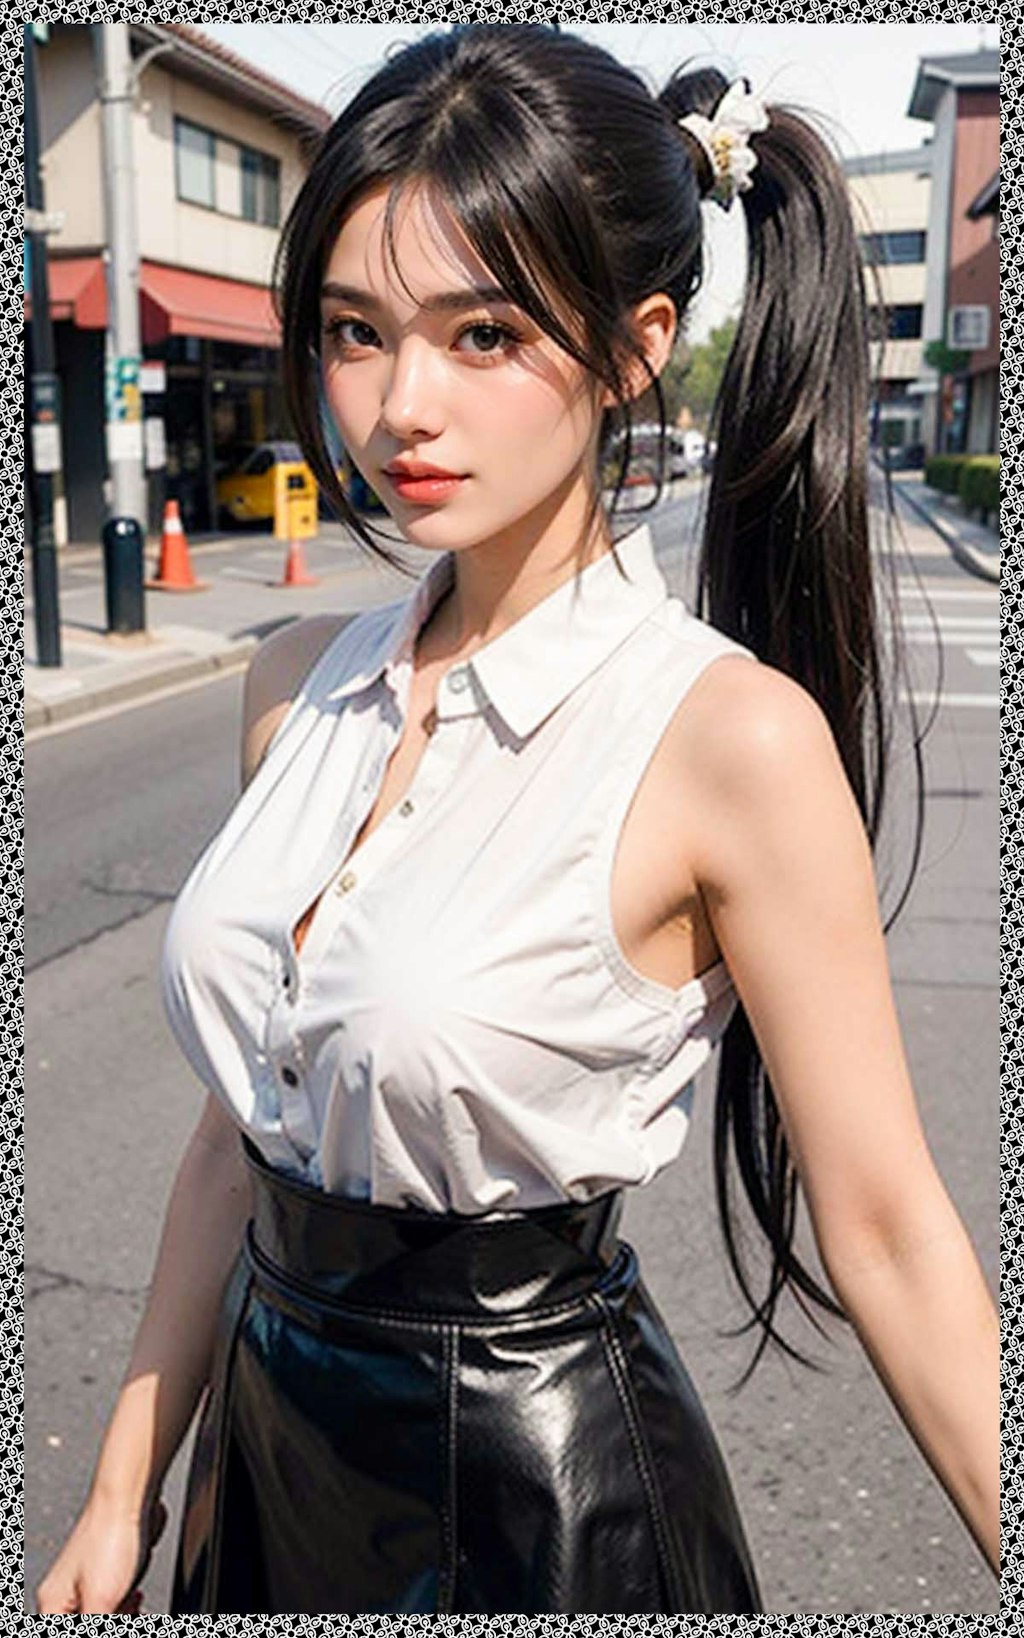 ポニテ巨乳の私服　Private clothes with big breasts in ponytail